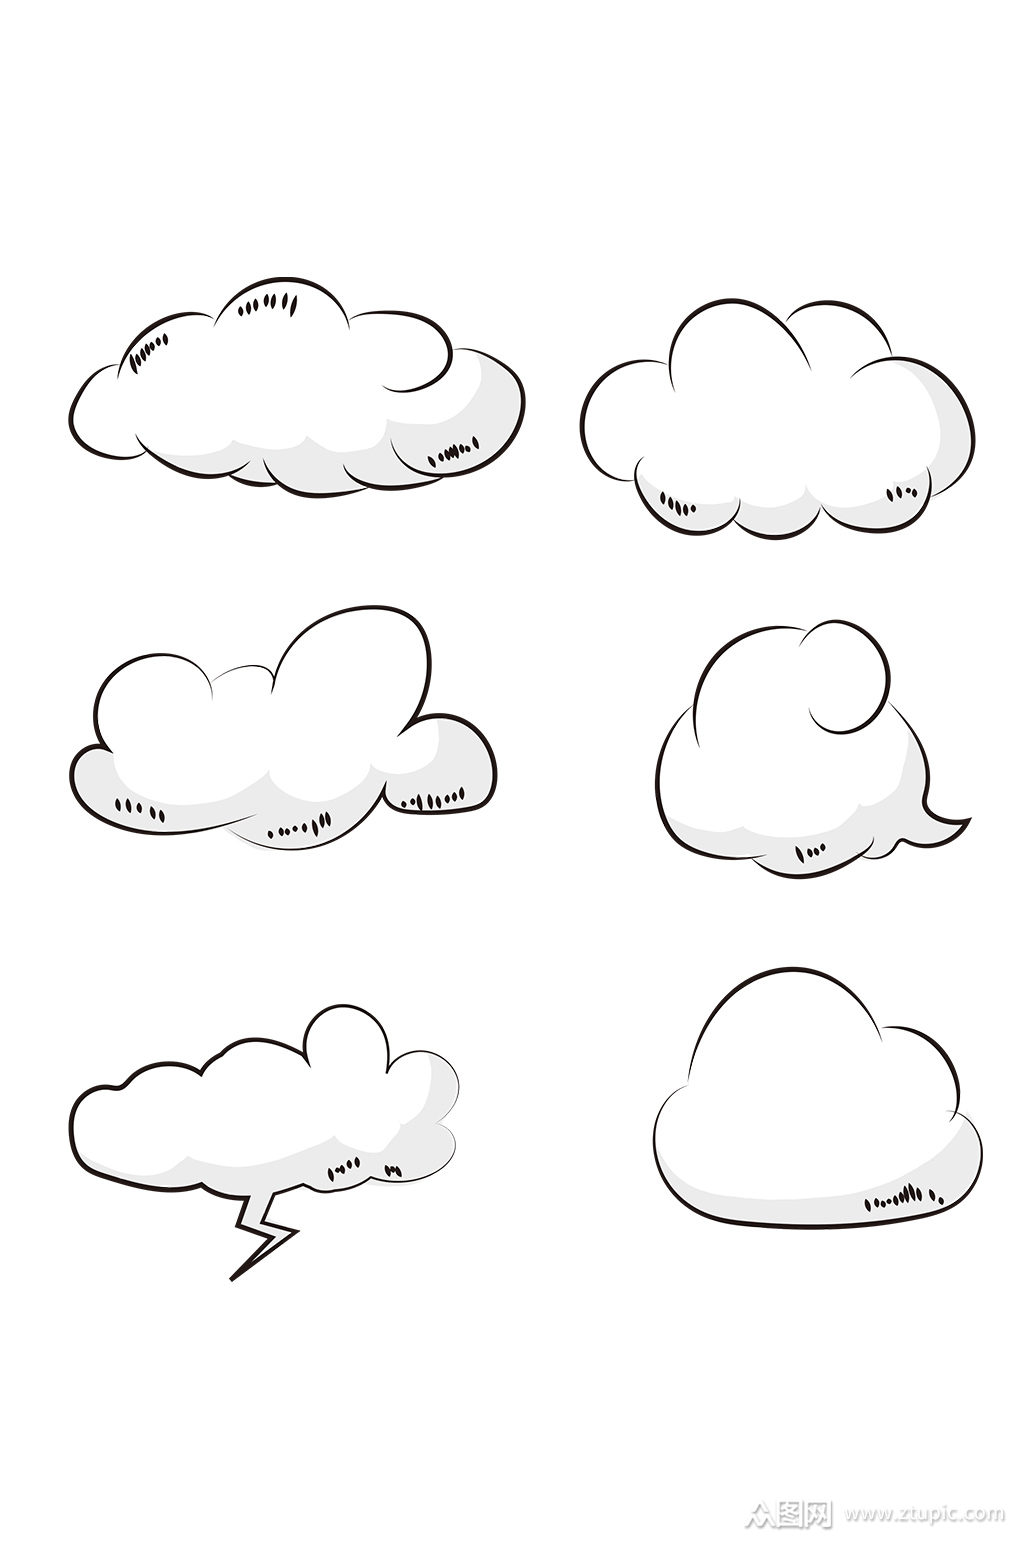 手绘卡通可爱云朵简笔白云元素图片素材-编号32812214-图行天下